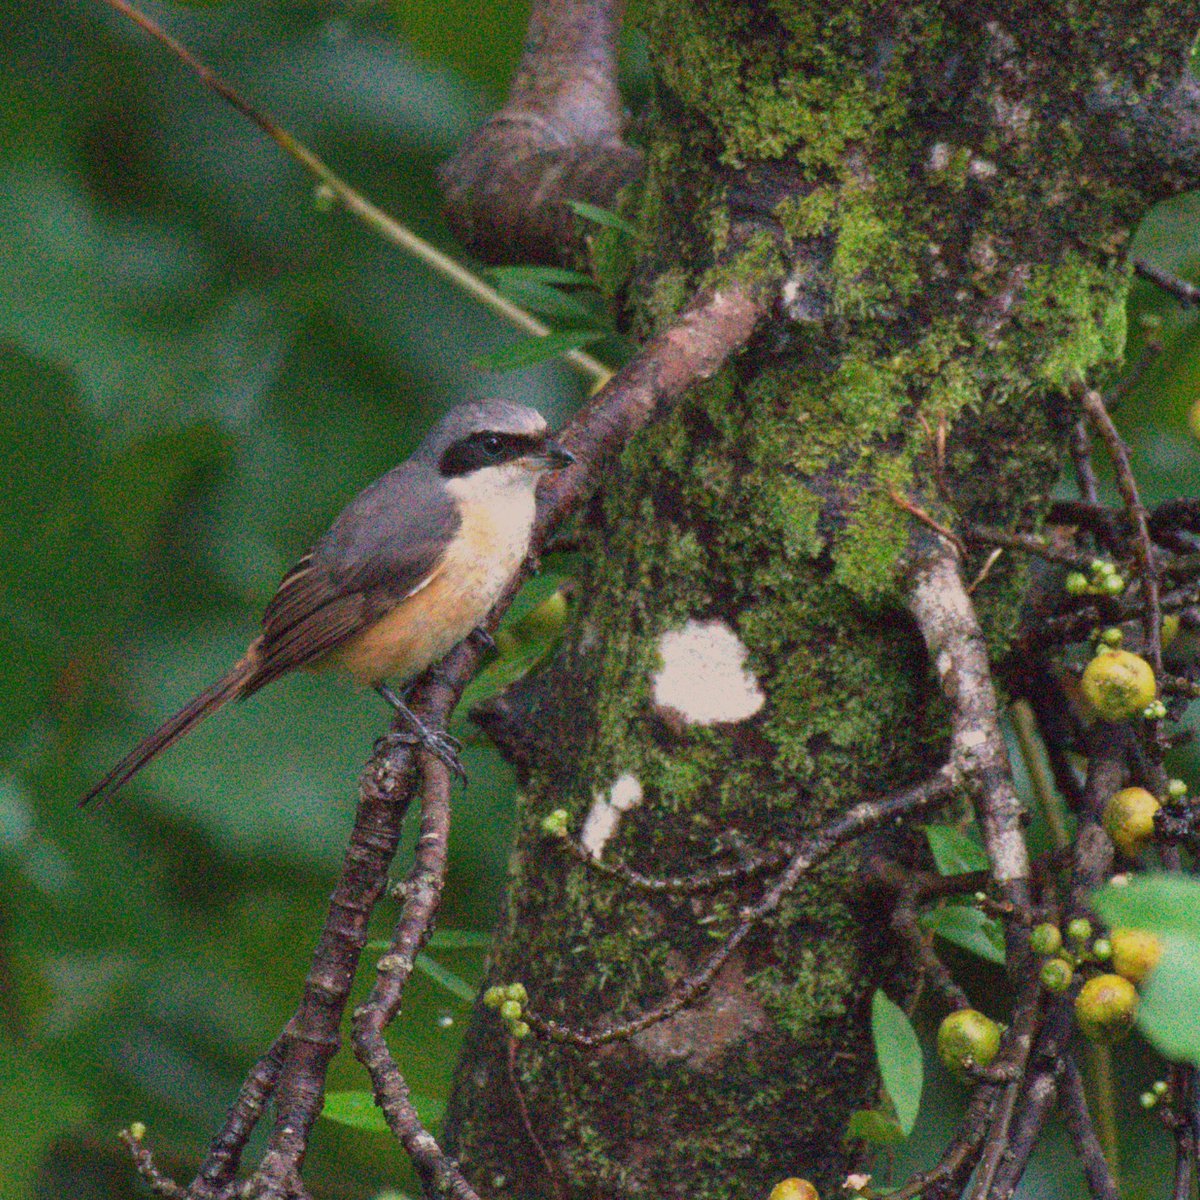 Grey backed shrike Assam #IndiAves #TwitterNatureCommunity #NaturePhotography #birding #birds